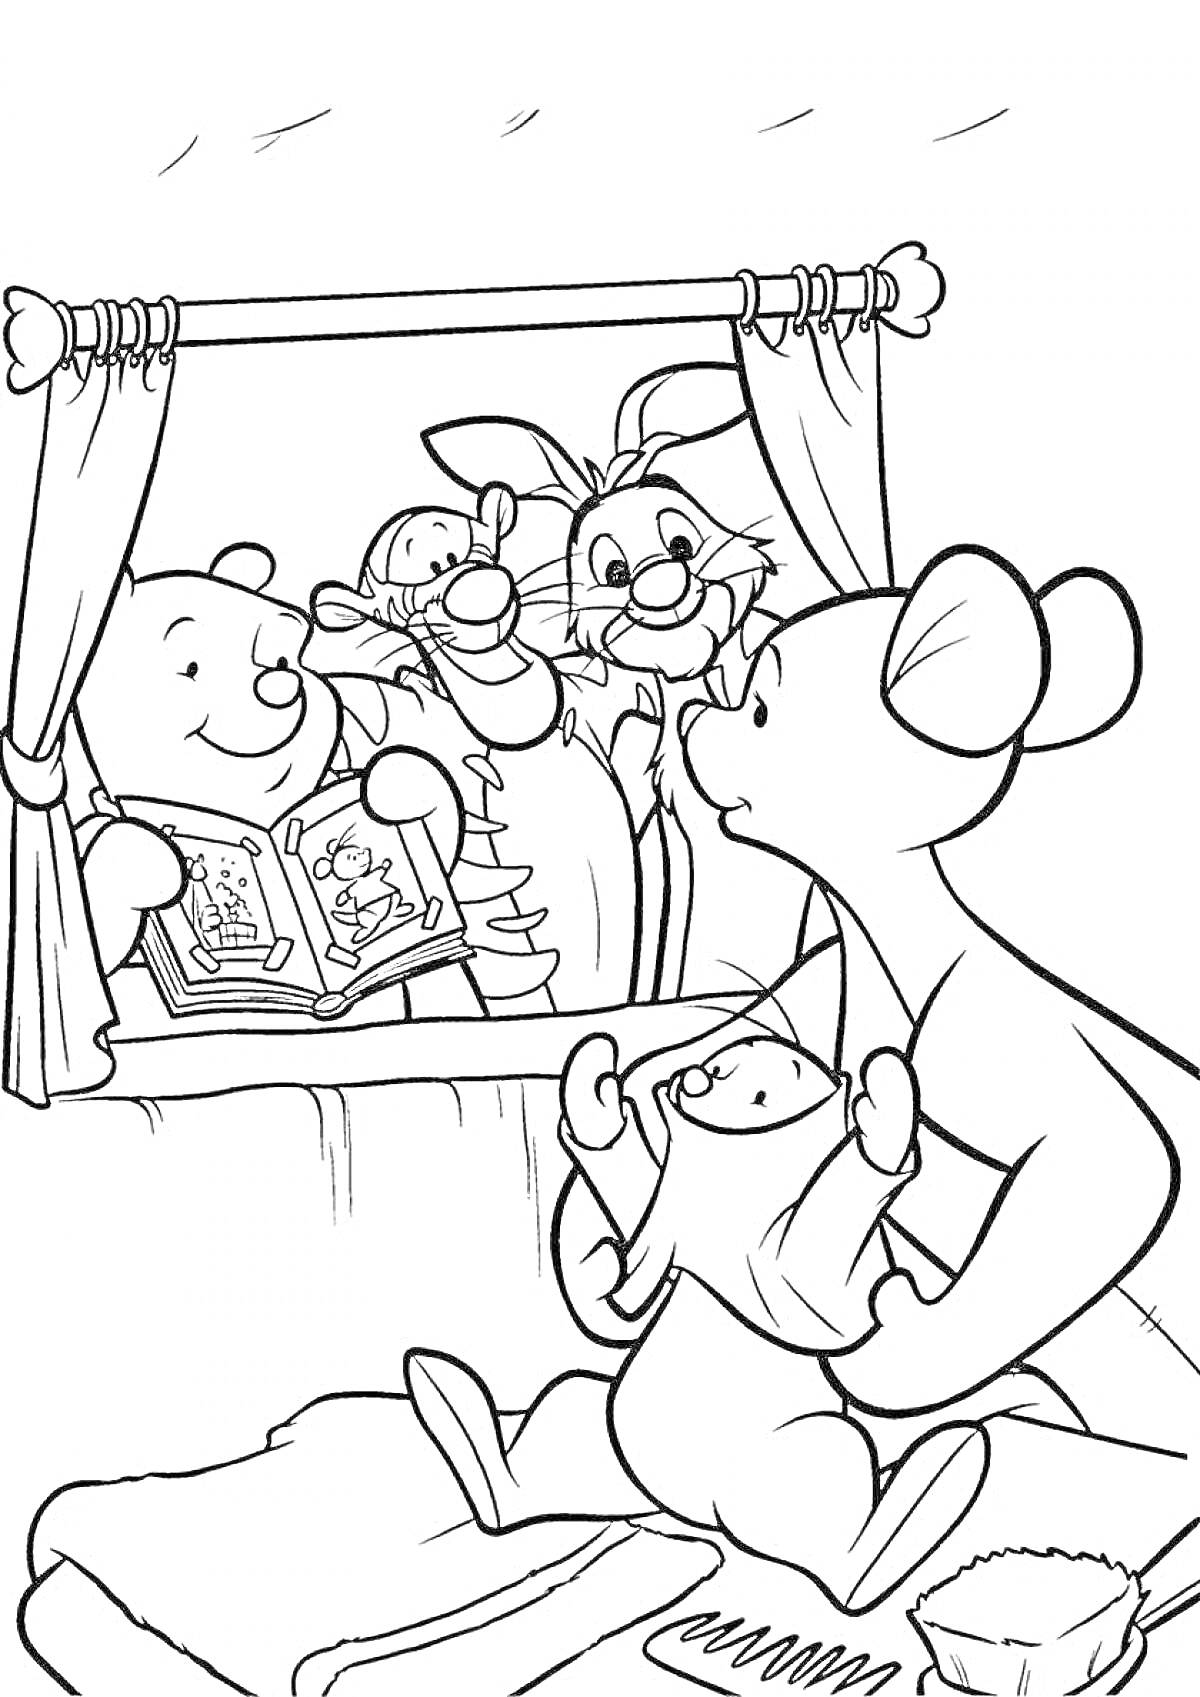 Раскраска Медвежонок и его друзья смотрят в окно, мышонок держит ребенка